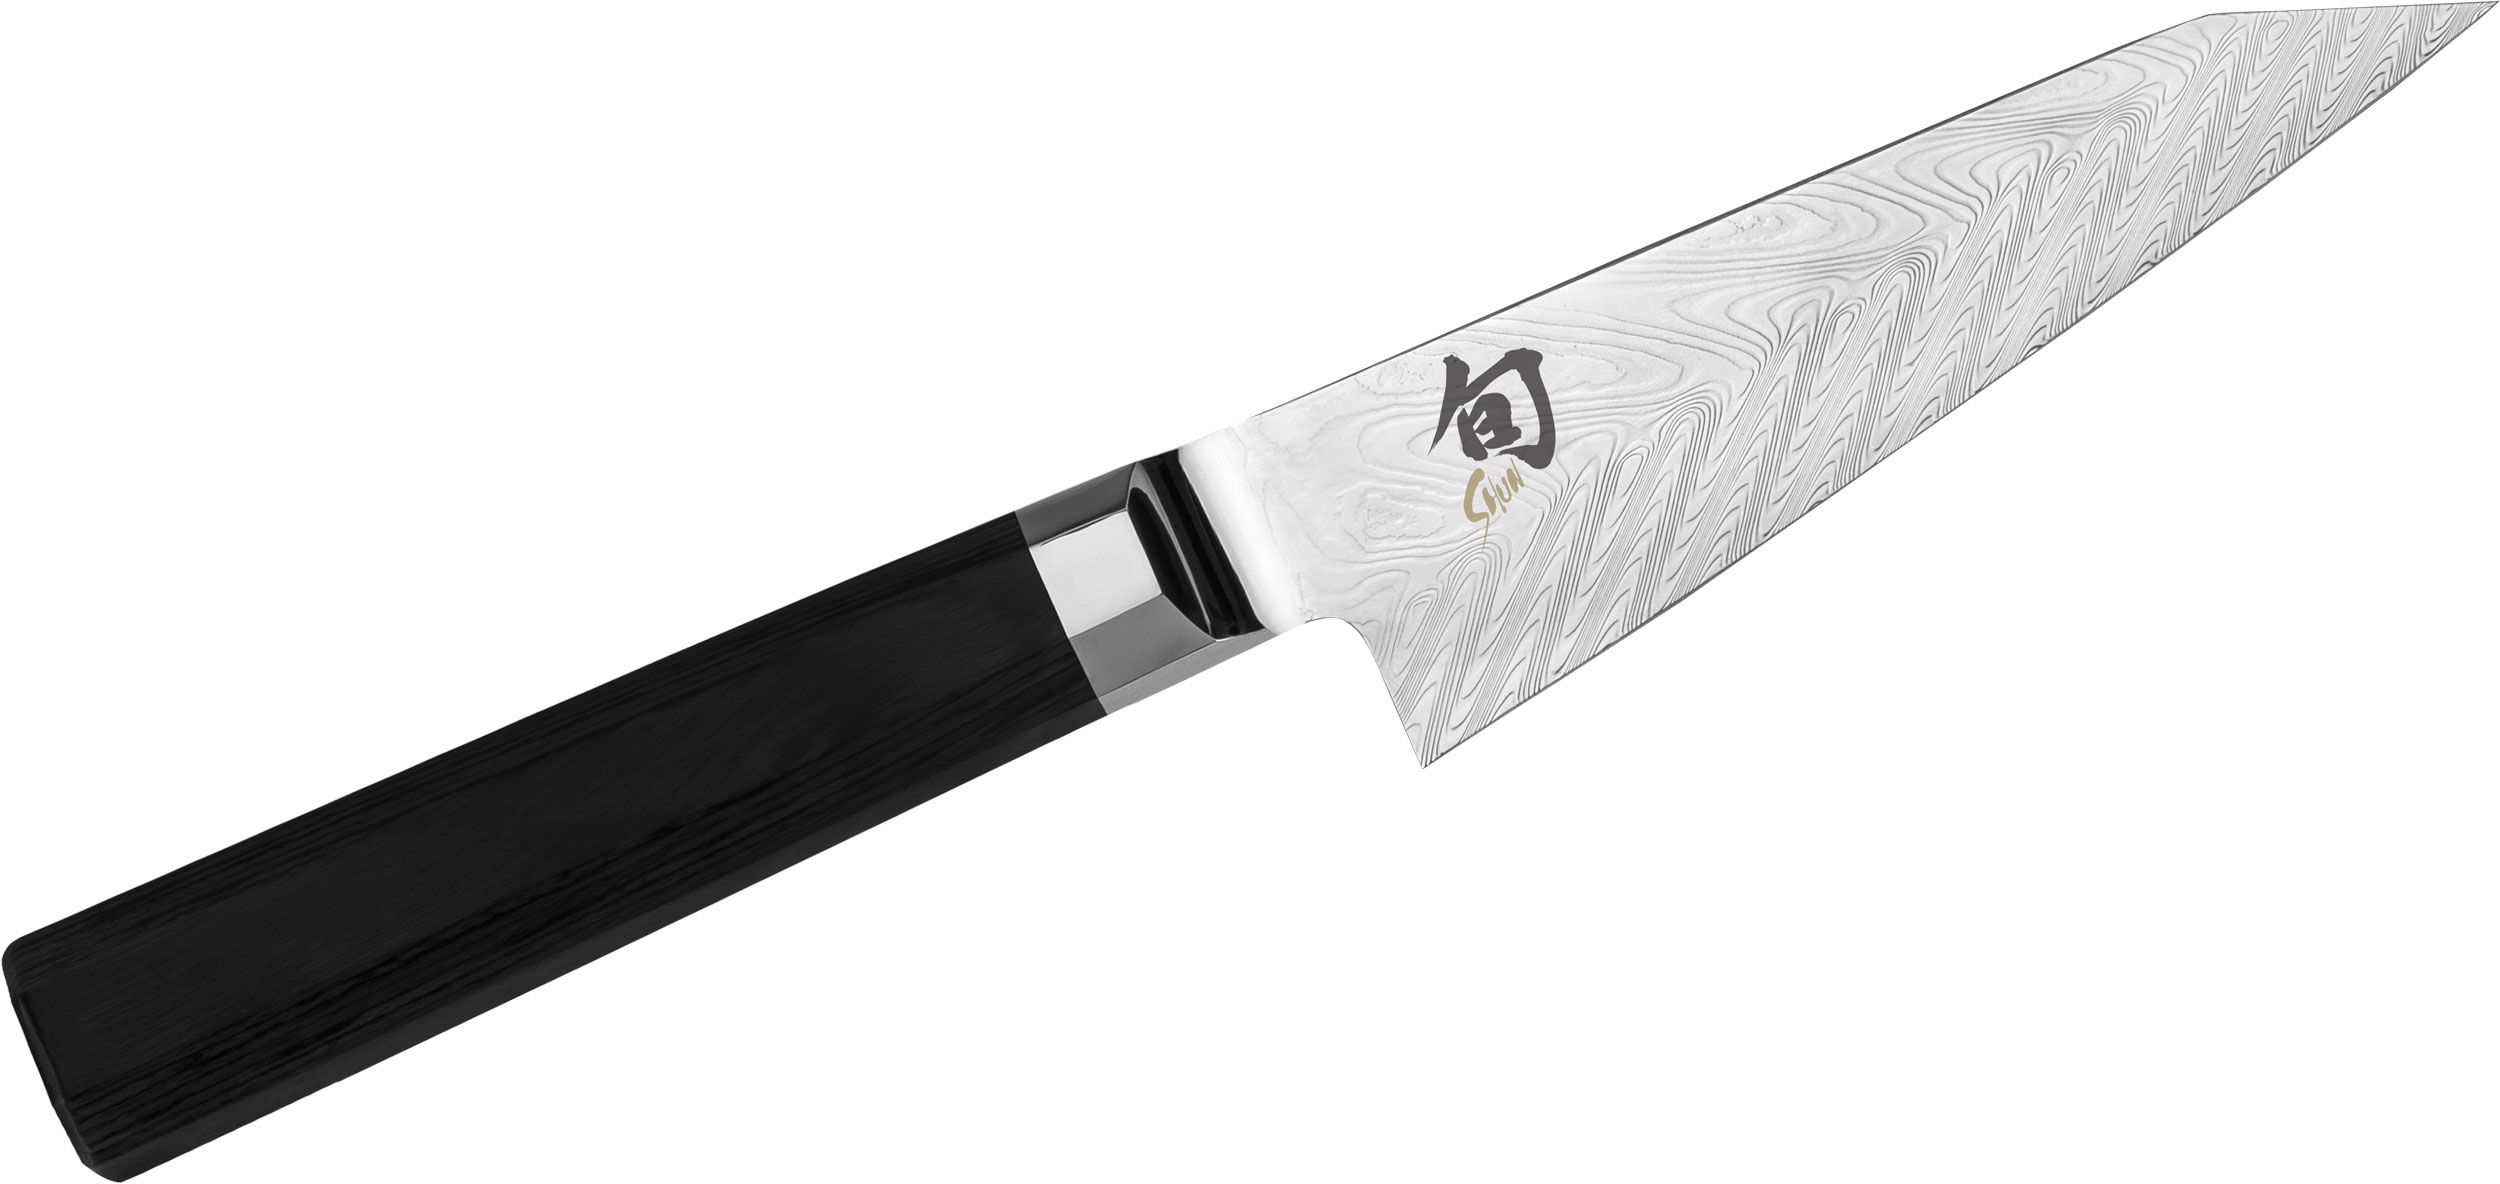 Shun VG0018 Dual Core Honesuki Japanese Boning Knife 4-1/2 